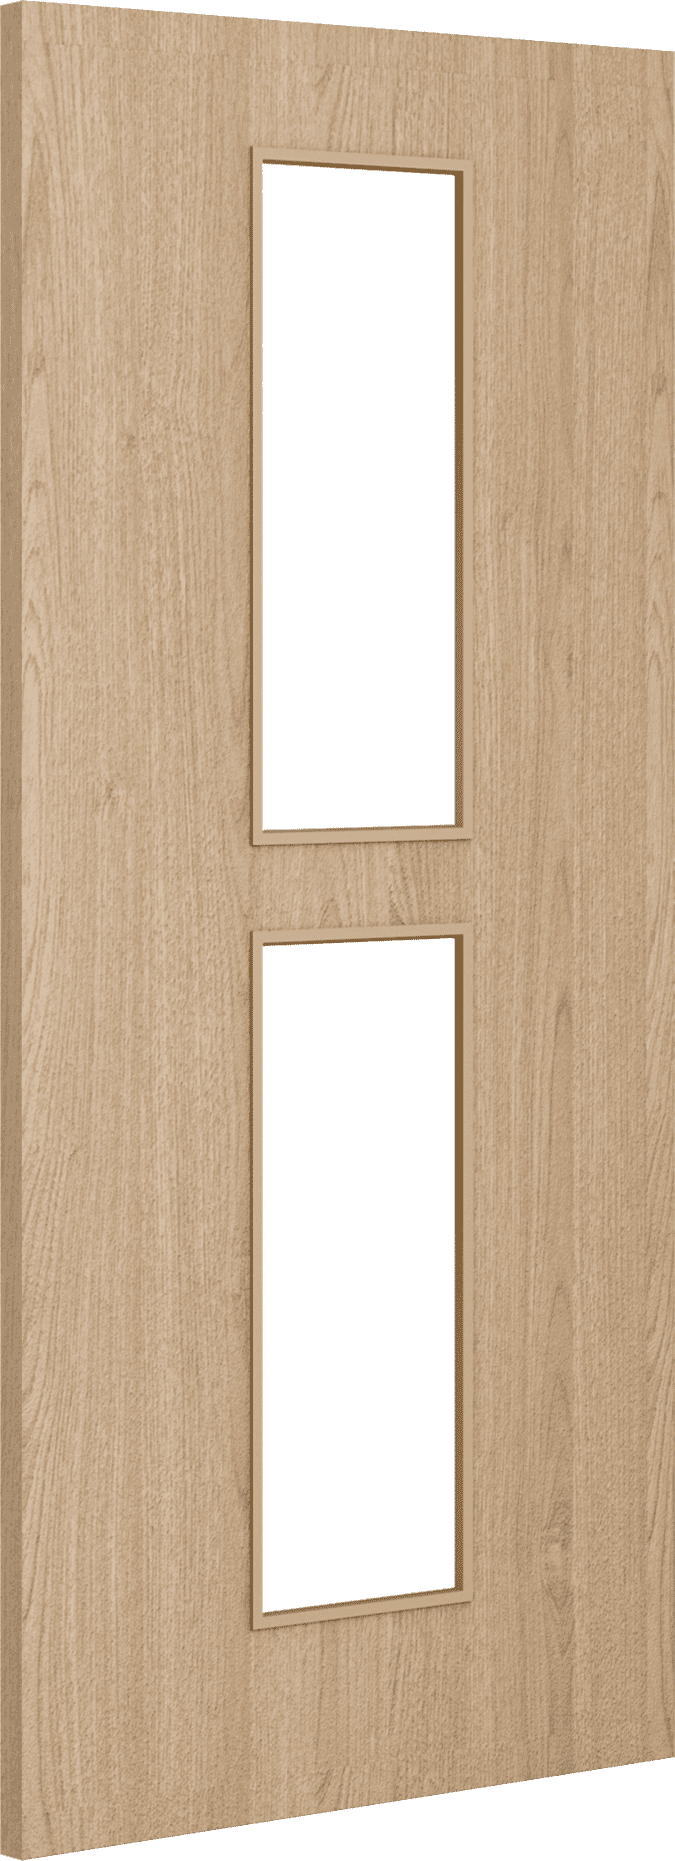 2040mm x 926mm x 44mm Architectural Oak 12 Clear Glazed - Prefinished FD30 Fire Door Blank